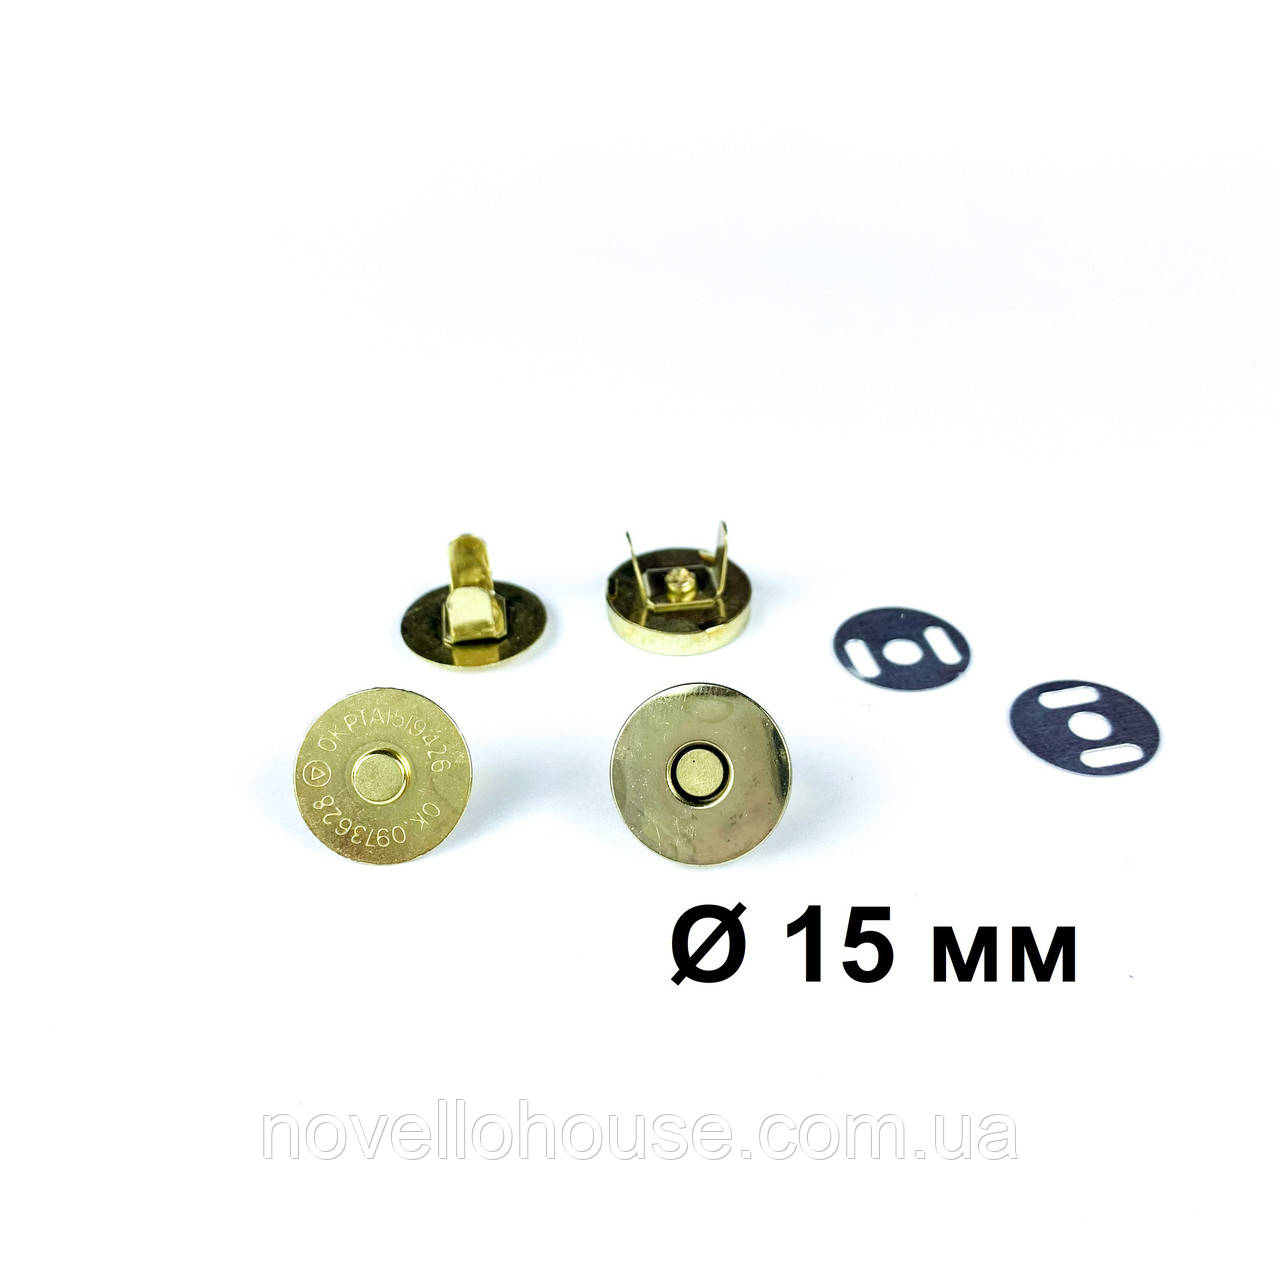 Сумковий магніт 15 мм, золото (Магніт чашка, крабик)